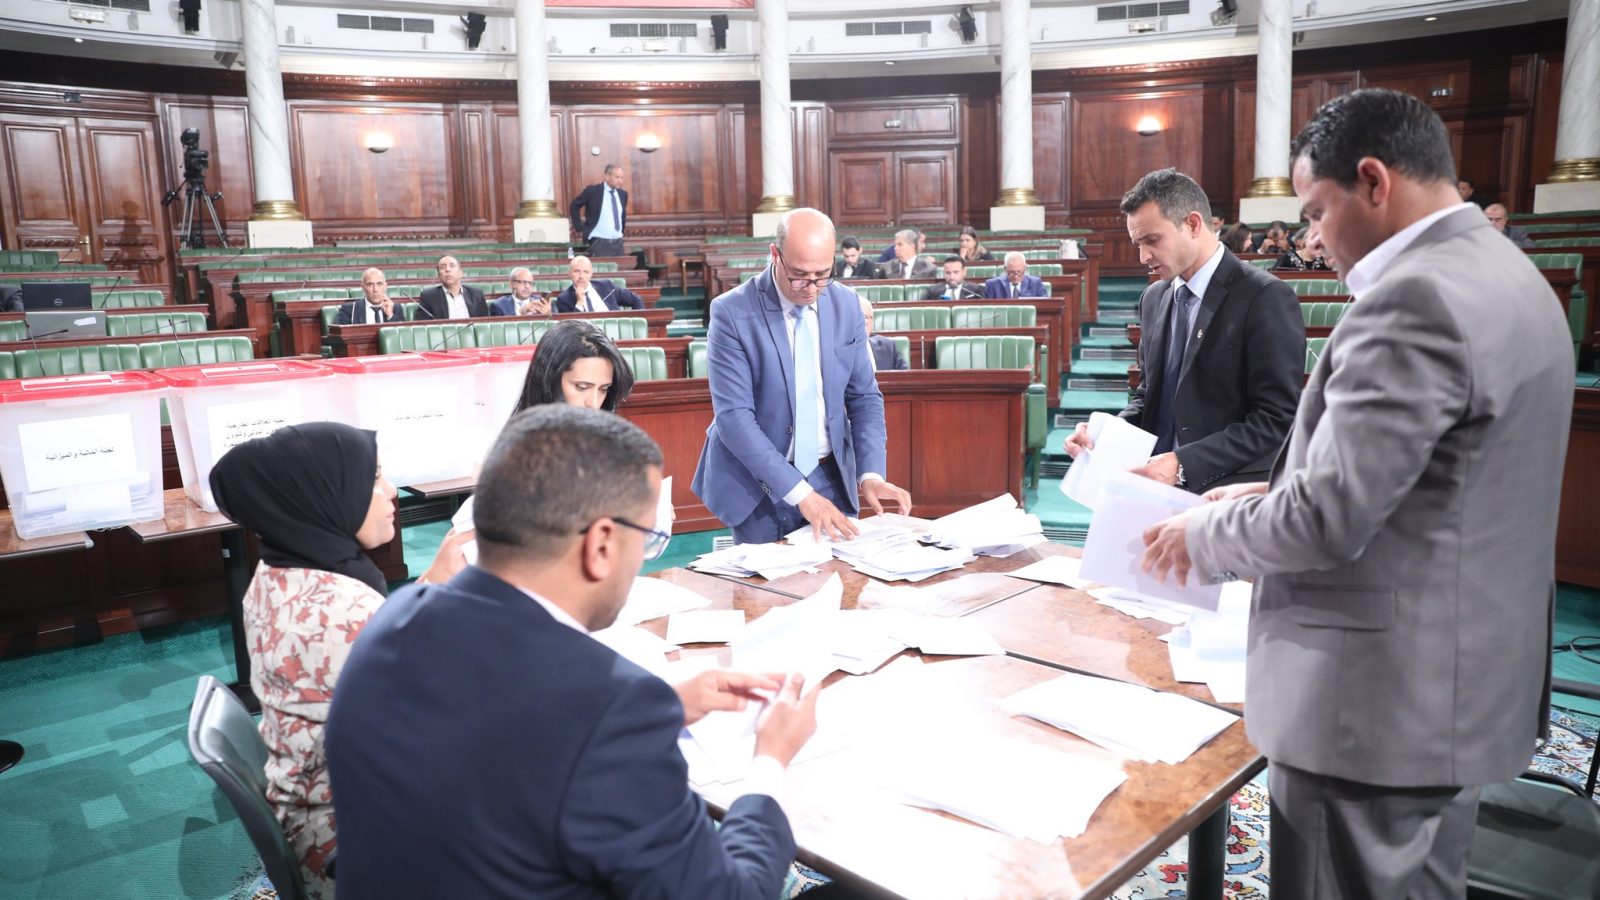 البرلمان/ اليوم تنصيب اللجان (تصريح لـ”تونس الان”)